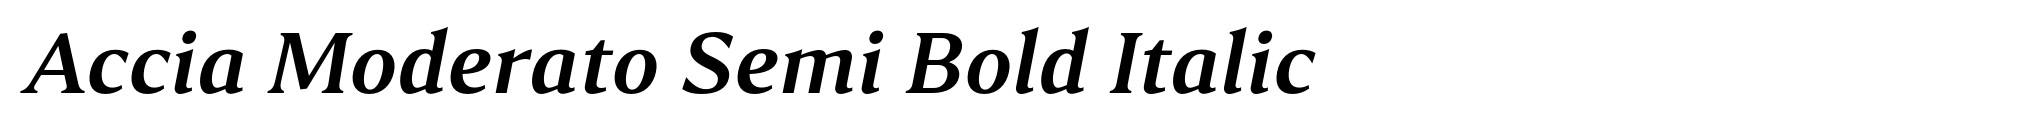 Accia Moderato Semi Bold Italic image